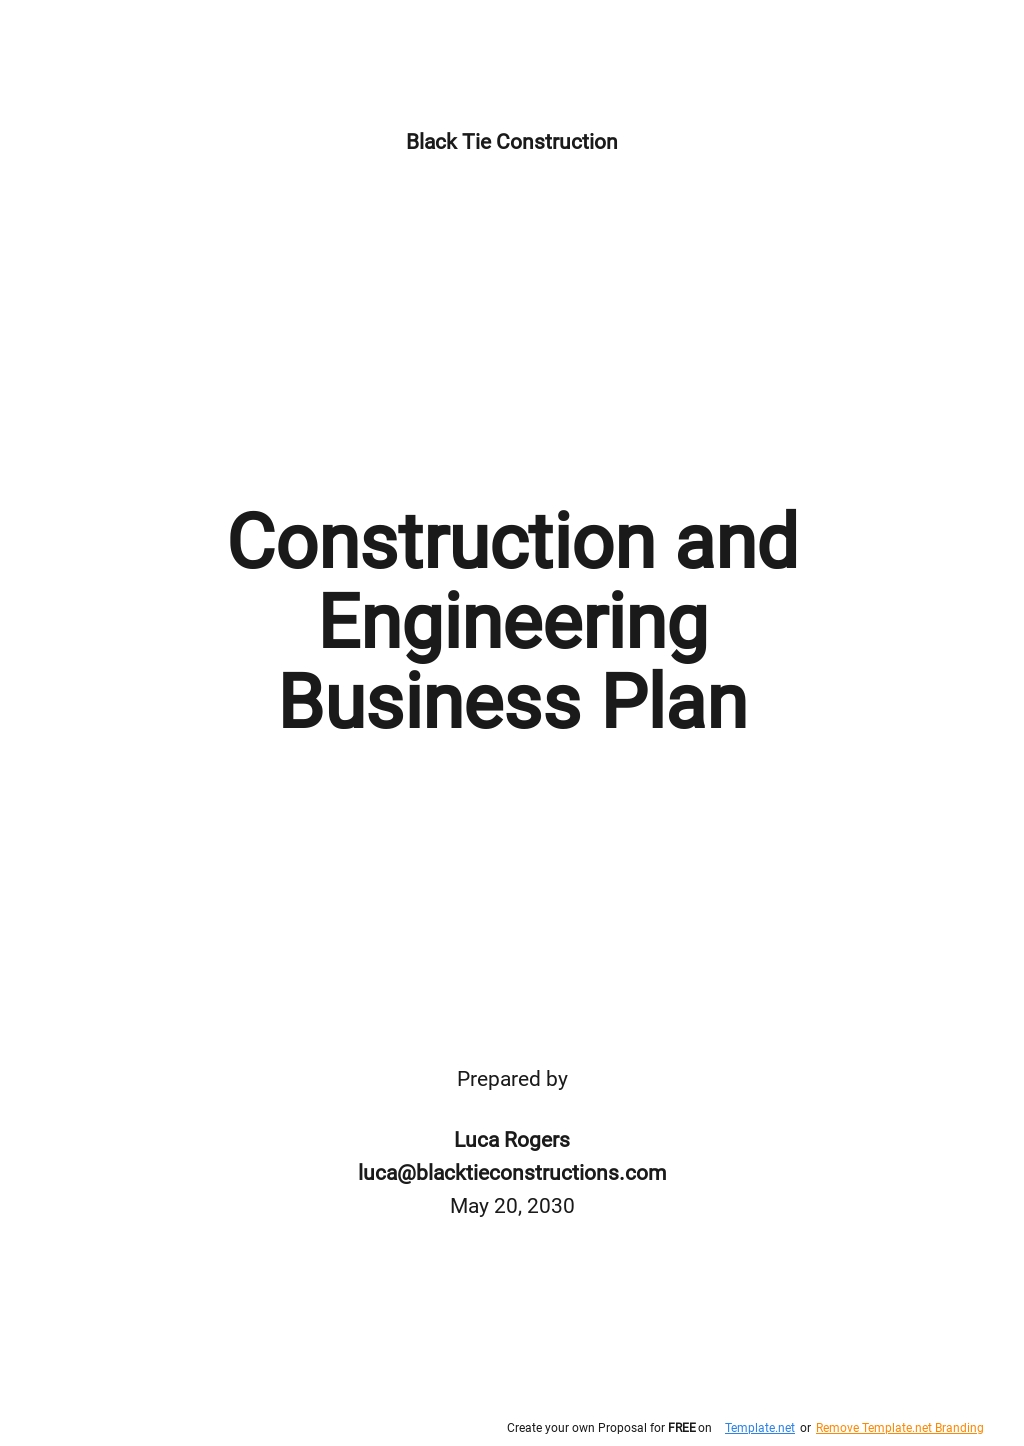 civil engineering business plan pdf free download